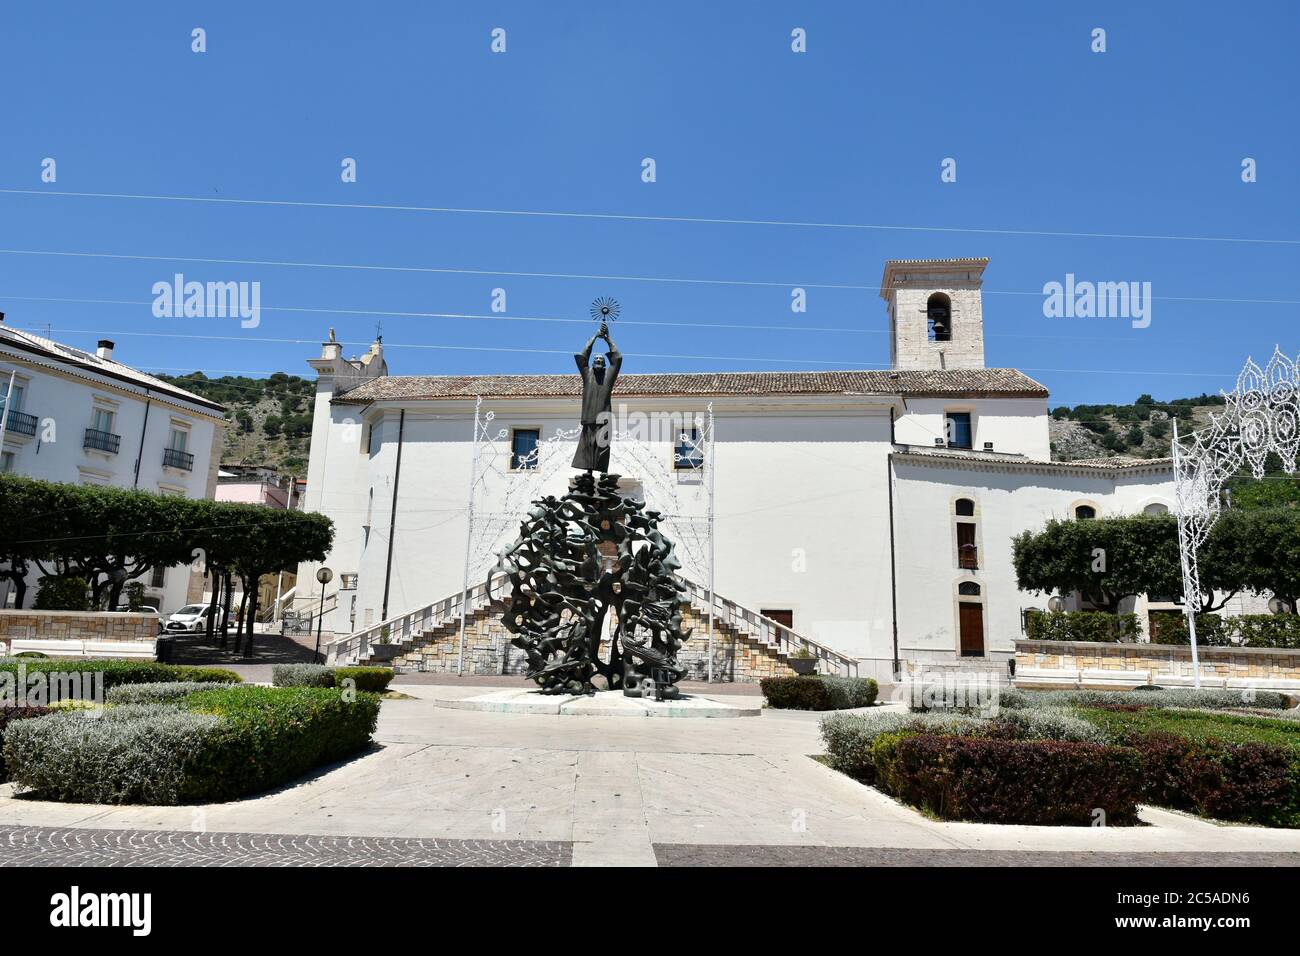 Ein Platz mit einer Statue, die dem Heiligen Vater Pio in der Stadt San Giovanni Rotondo in Italien gewidmet ist. Stockfoto